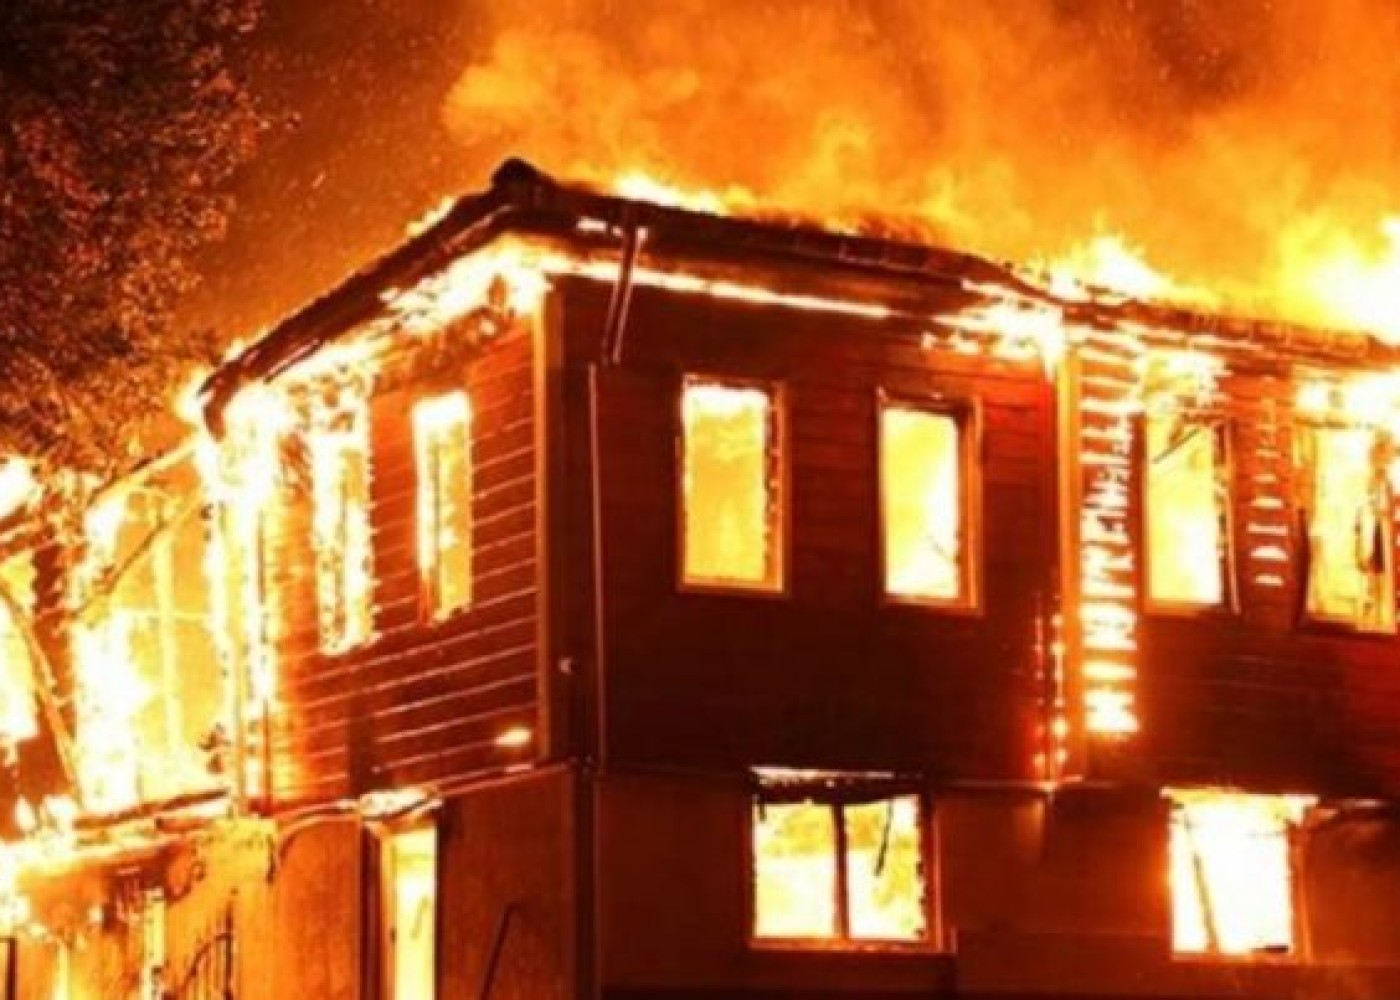 Astarada 6 otaqlı ev yandı